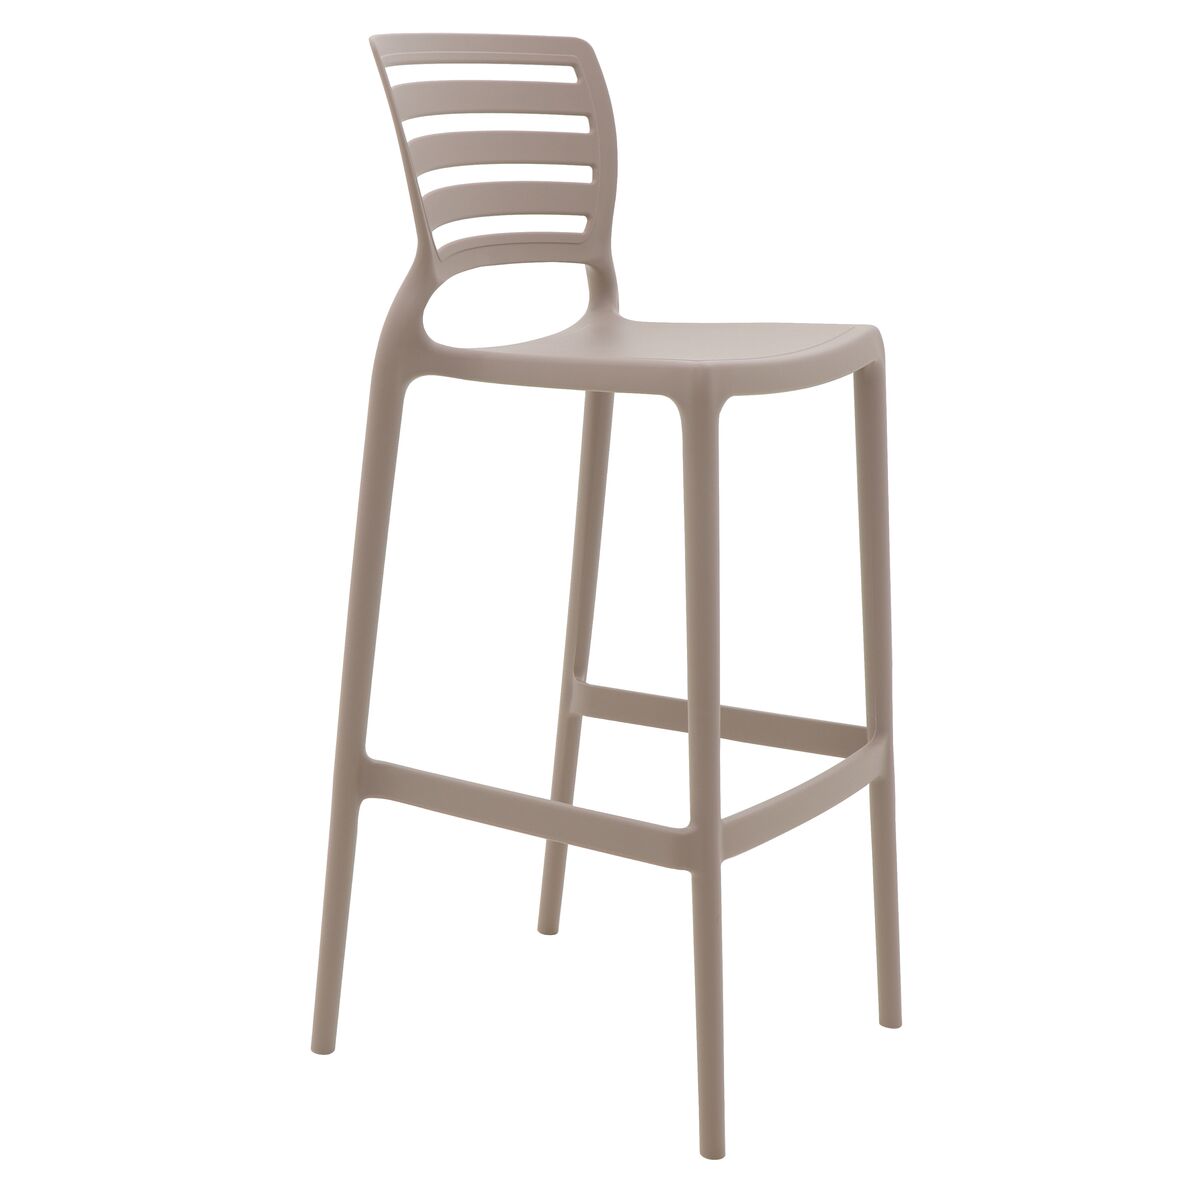 Mesa e cadeiras de plástico Tramontina  Cadeira de plastico tramontina,  Idéias de decoração casa, Mesas e cadeiras